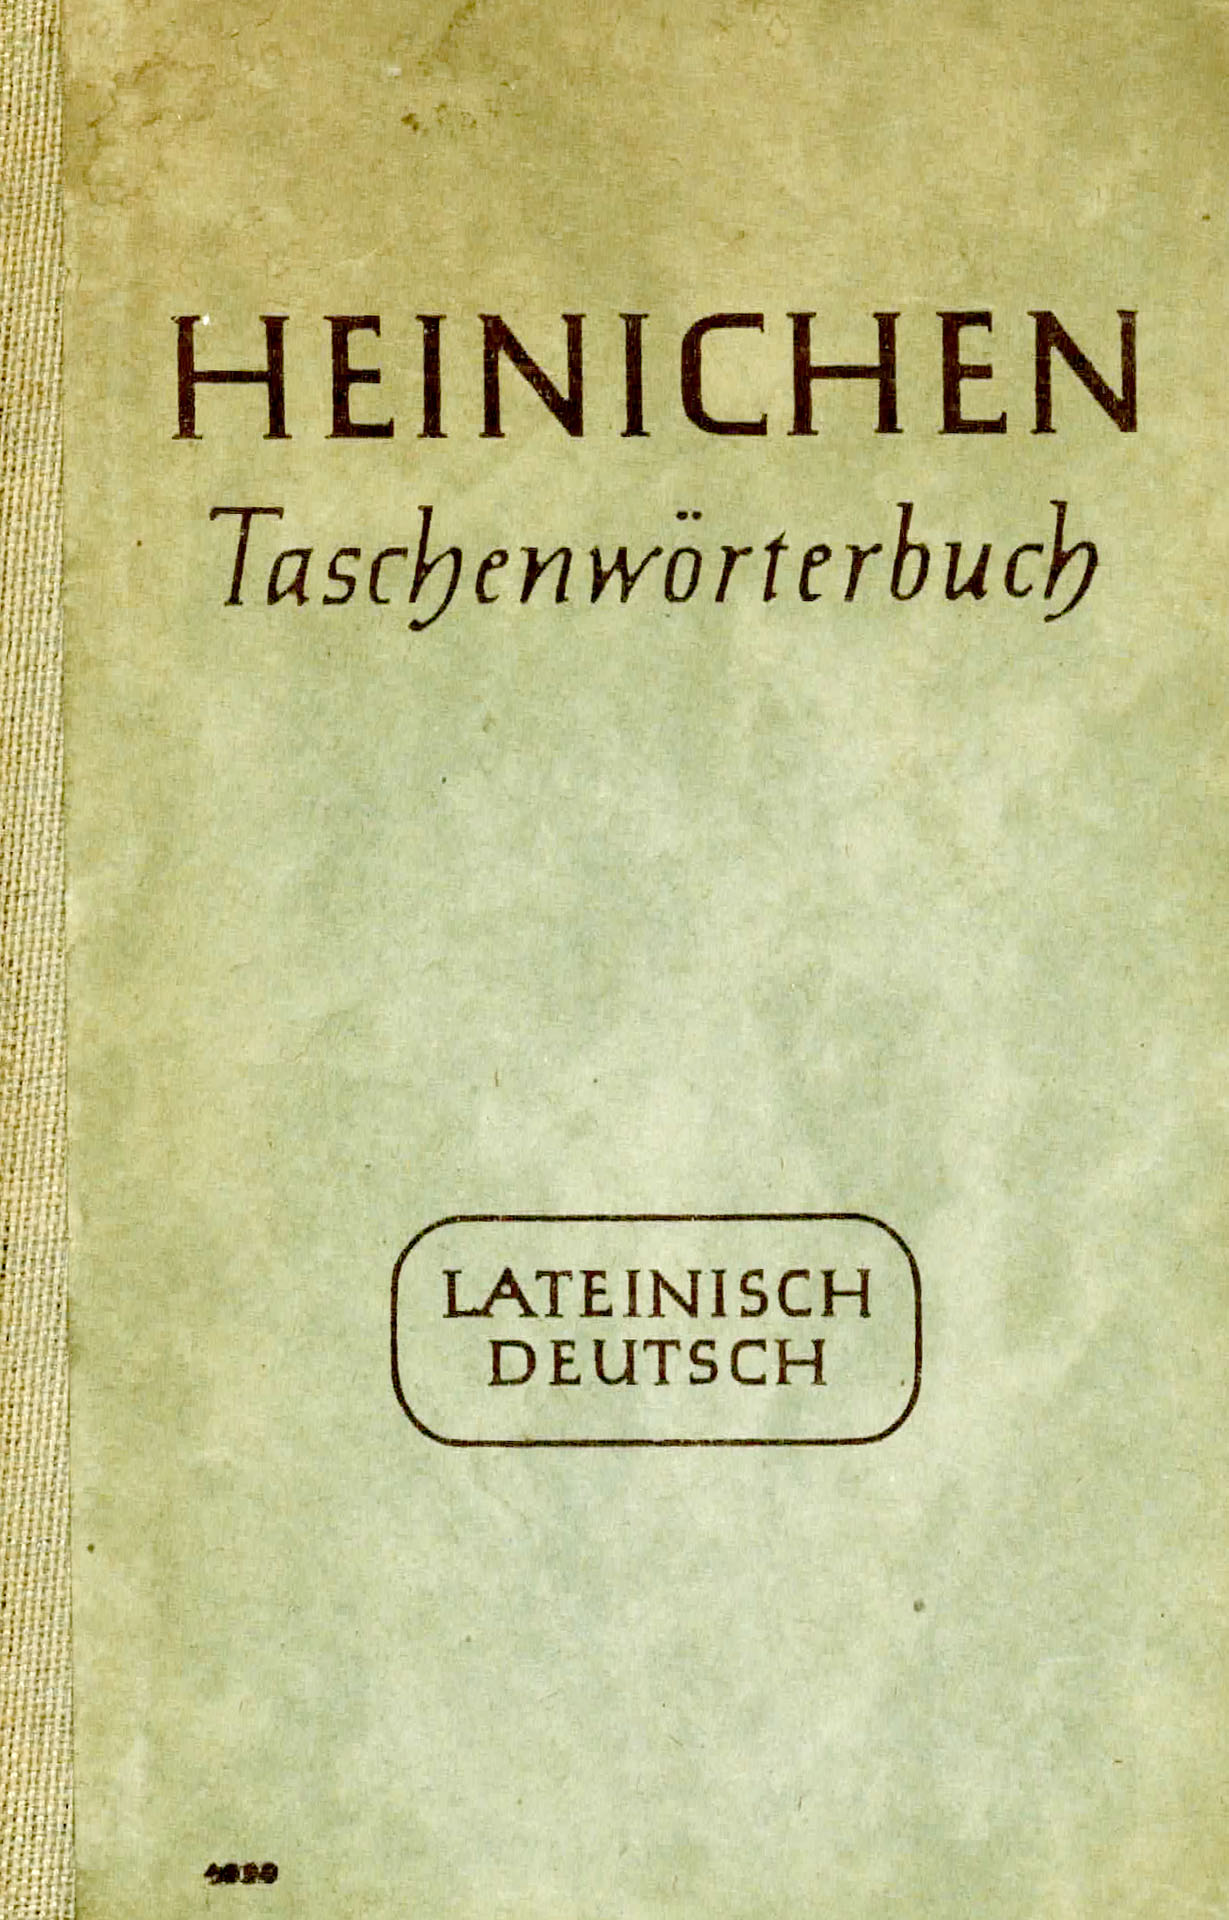 Taschenwörterbuch Latainisch - Deutsch - Heinichen, F.A.